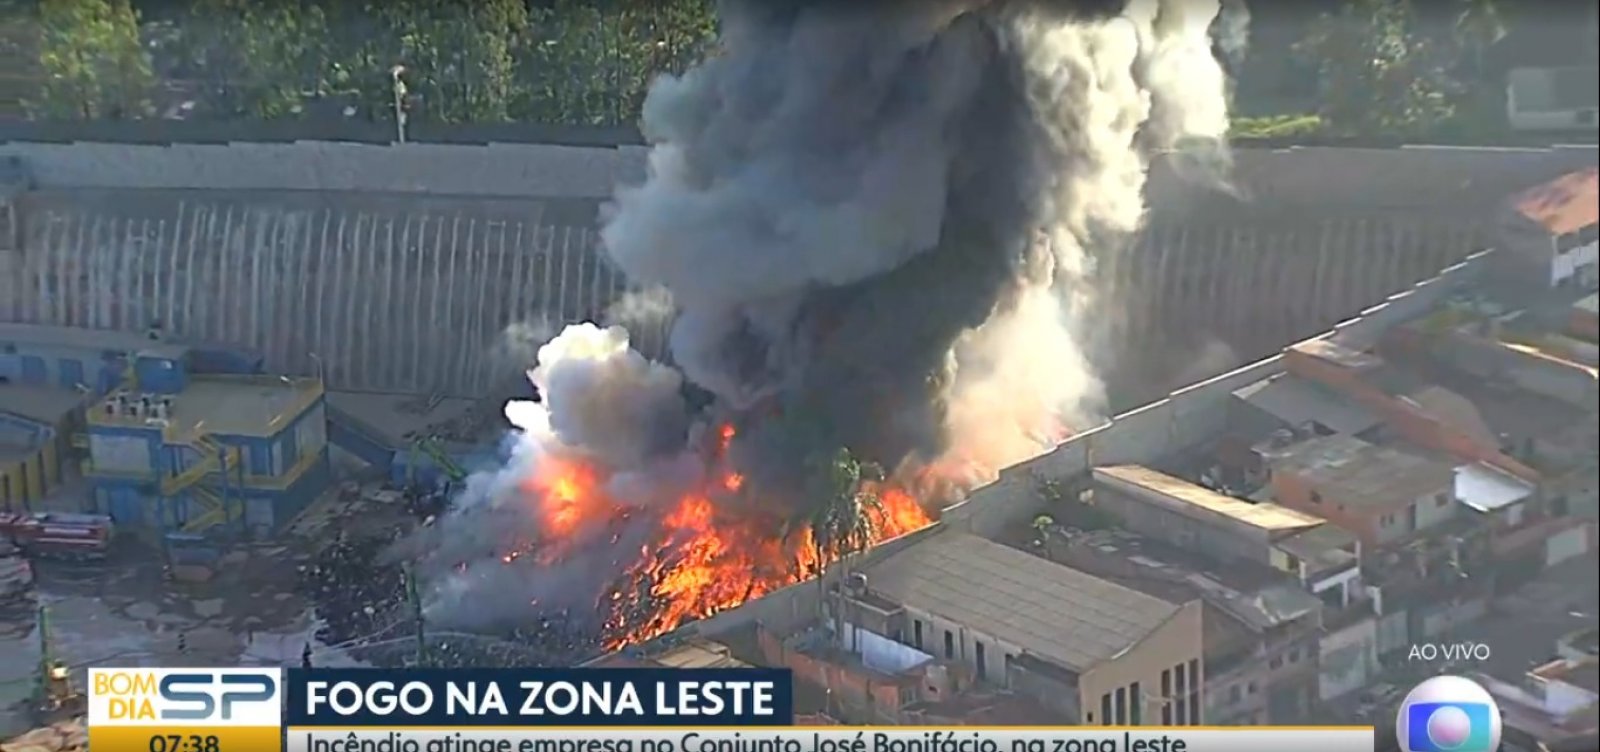 Incêndio de grandes proporções atinge galpão em São Paulo